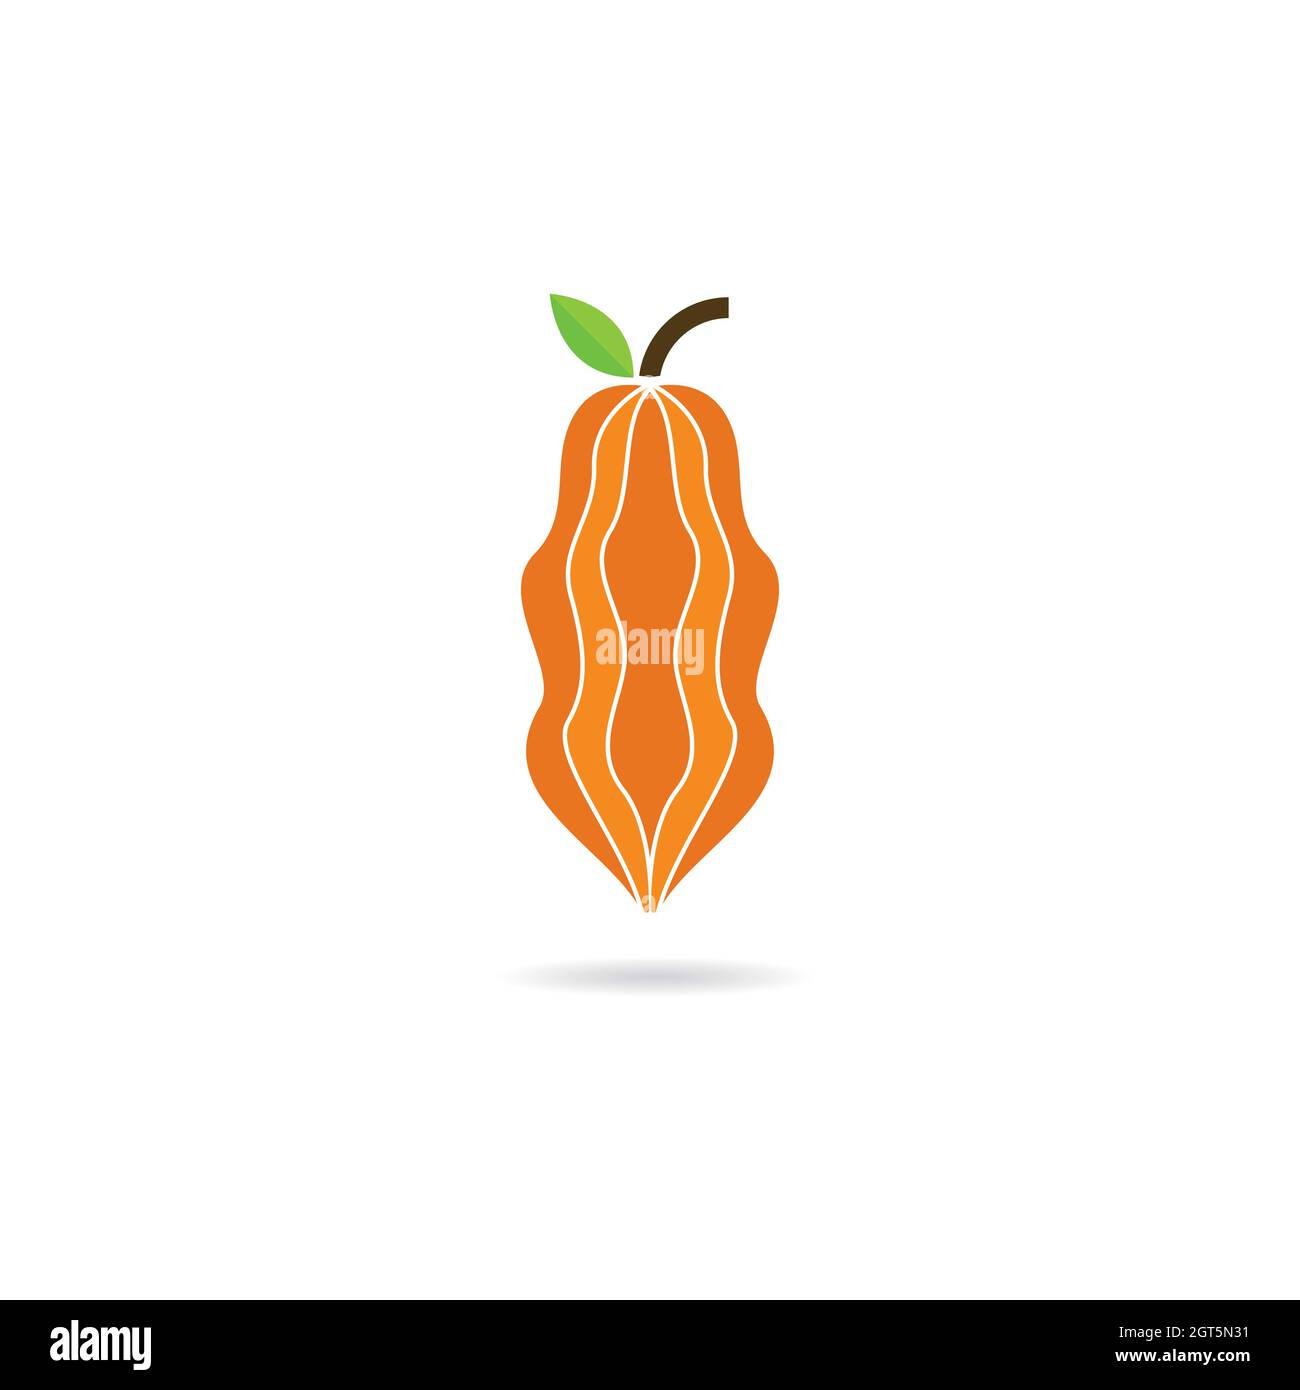 Cacao logo template vector icon design Stock Photo